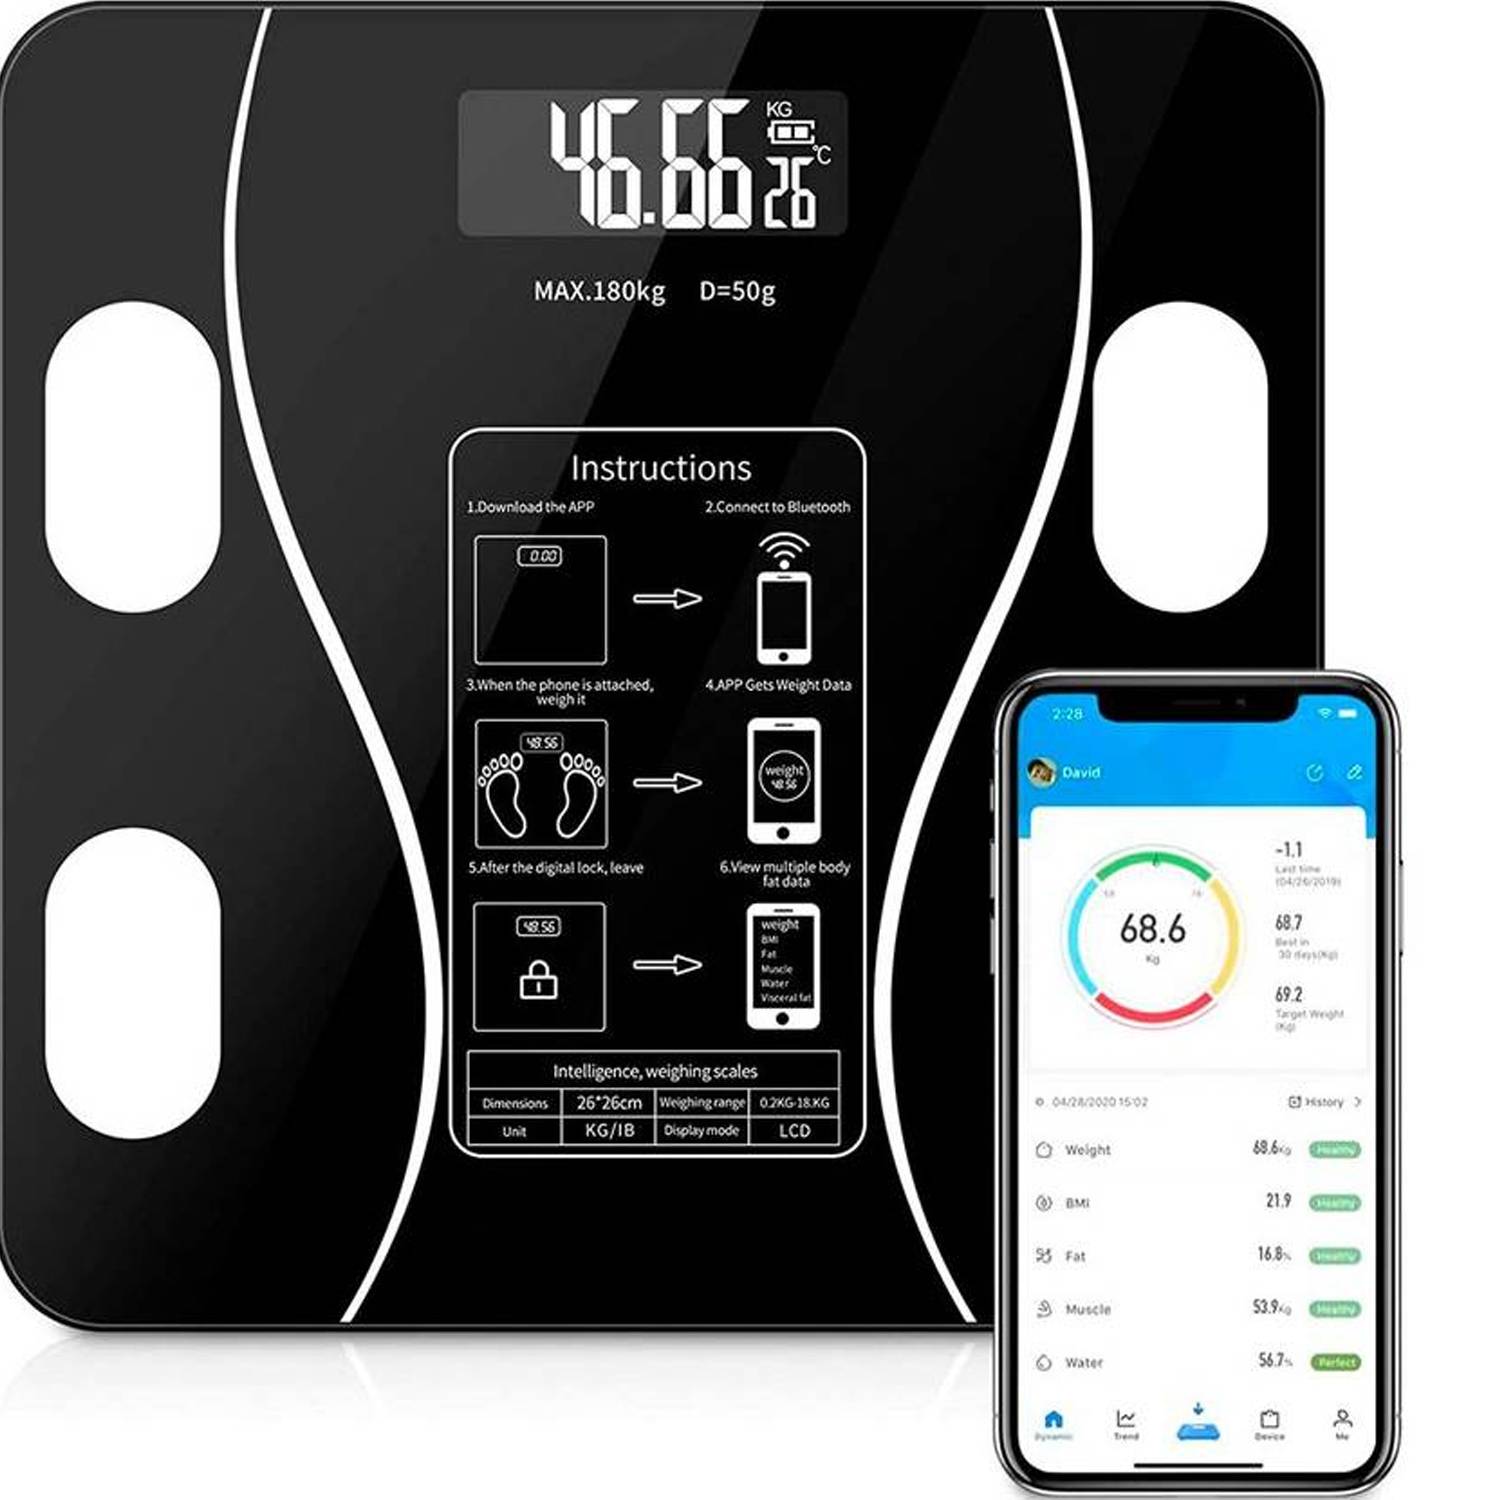 GENERICO Bascula Peso Baño Balanza Digital Inteligente 180kg App